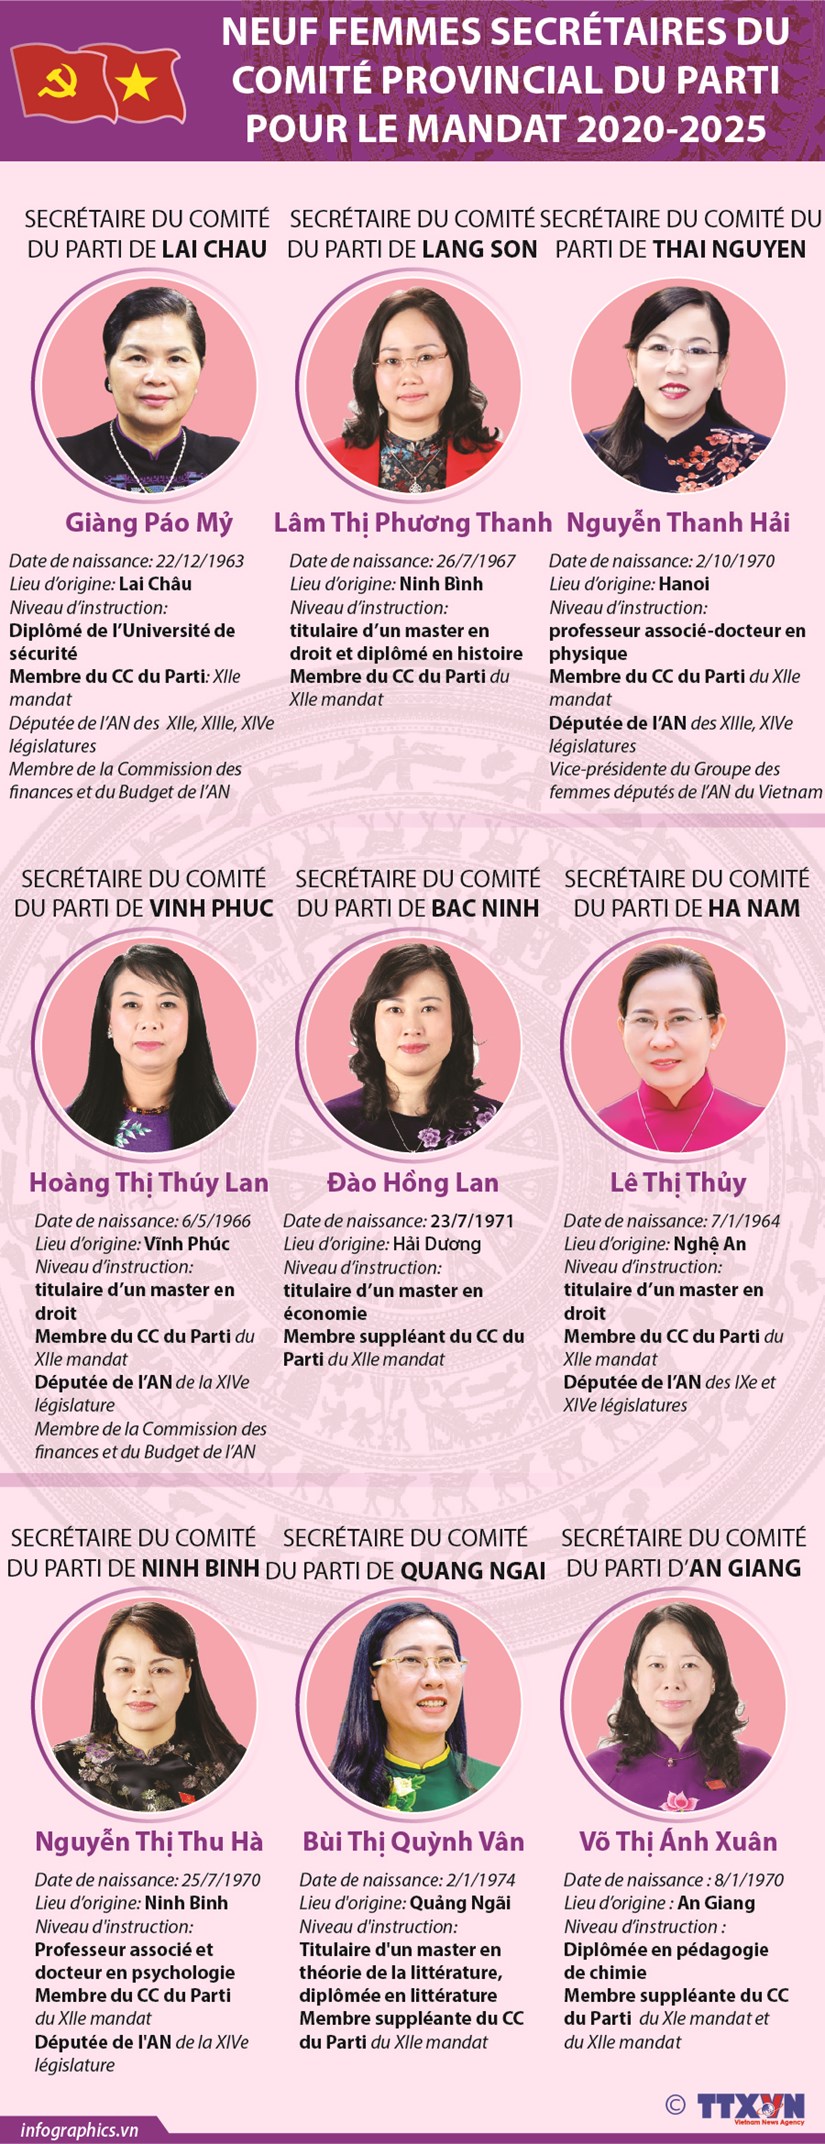 Neuf femmes secretaires du Comite provincial du Parti pour le mandat 2020-2025 hinh anh 1